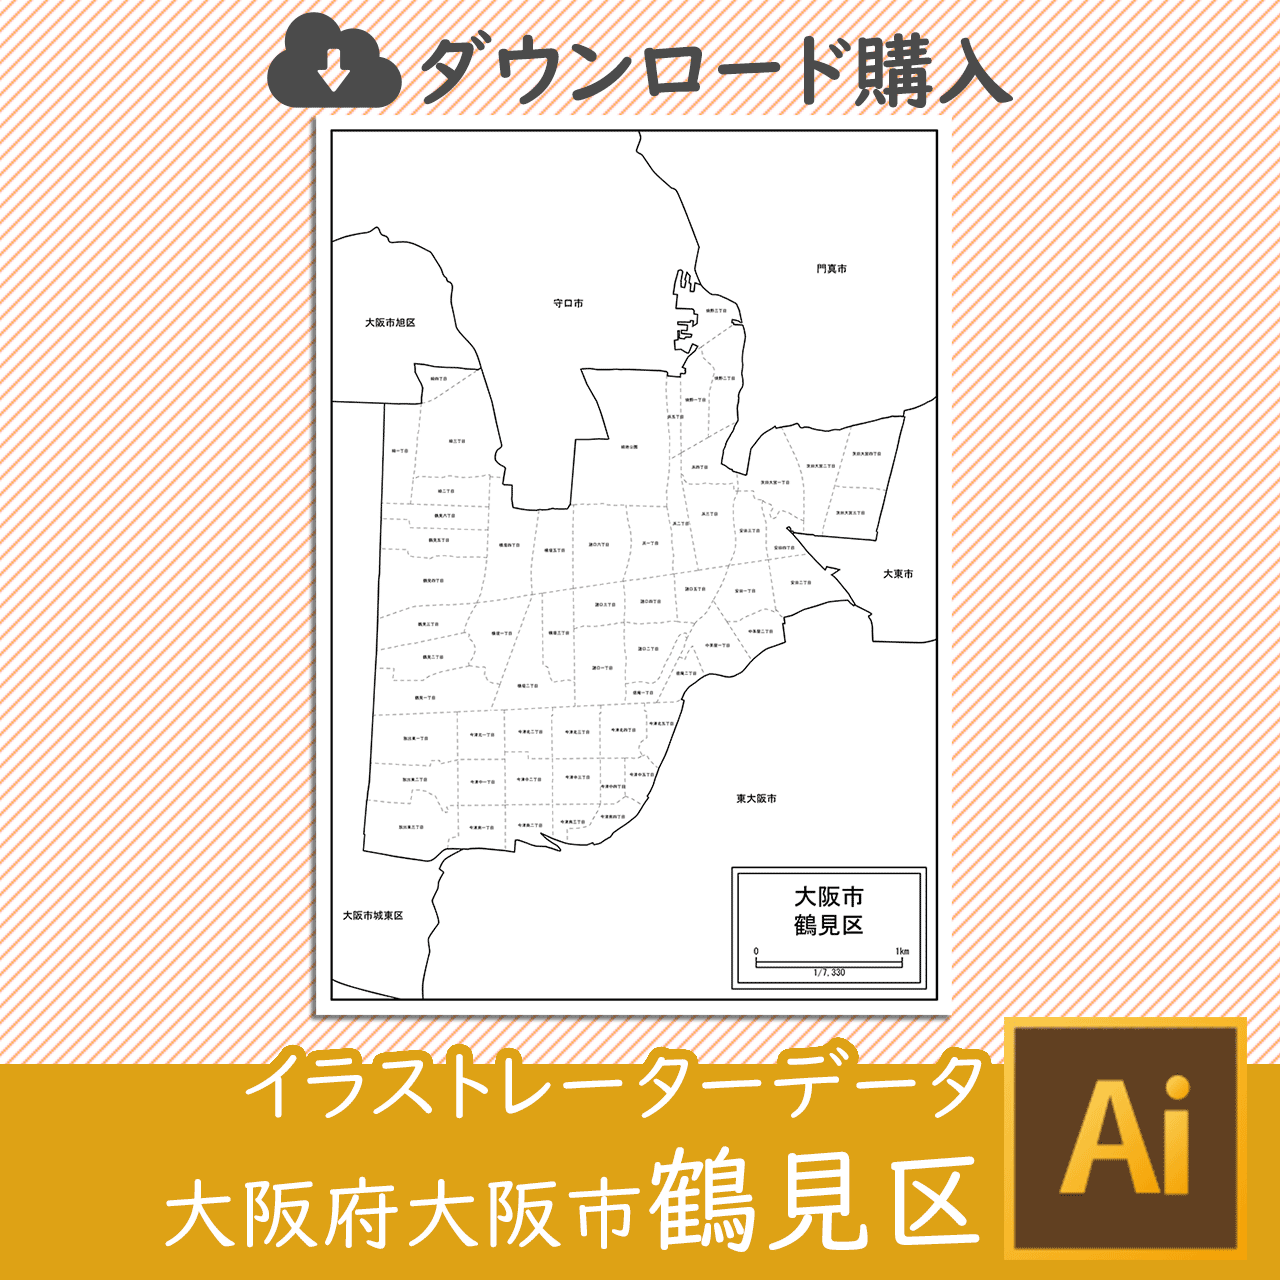 大阪市鶴見区のaiデータのサムネイル画像